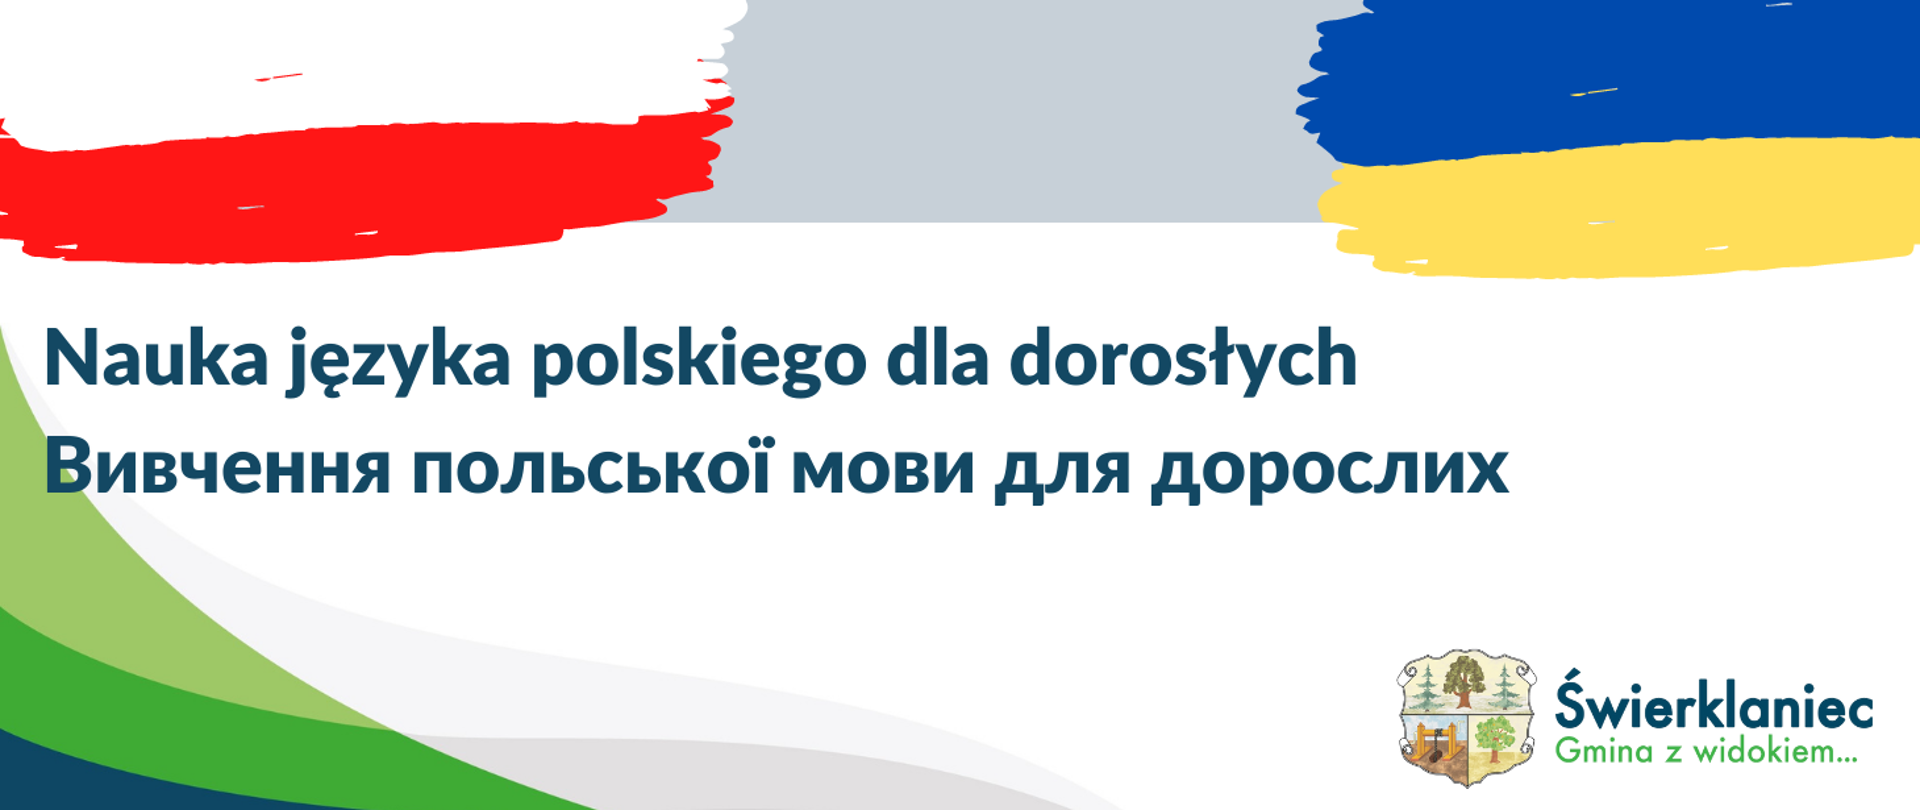 Nauka języka polskiego dla dorosłych - flagi polska i ukraińska oraz logo gminy Świerklaniec